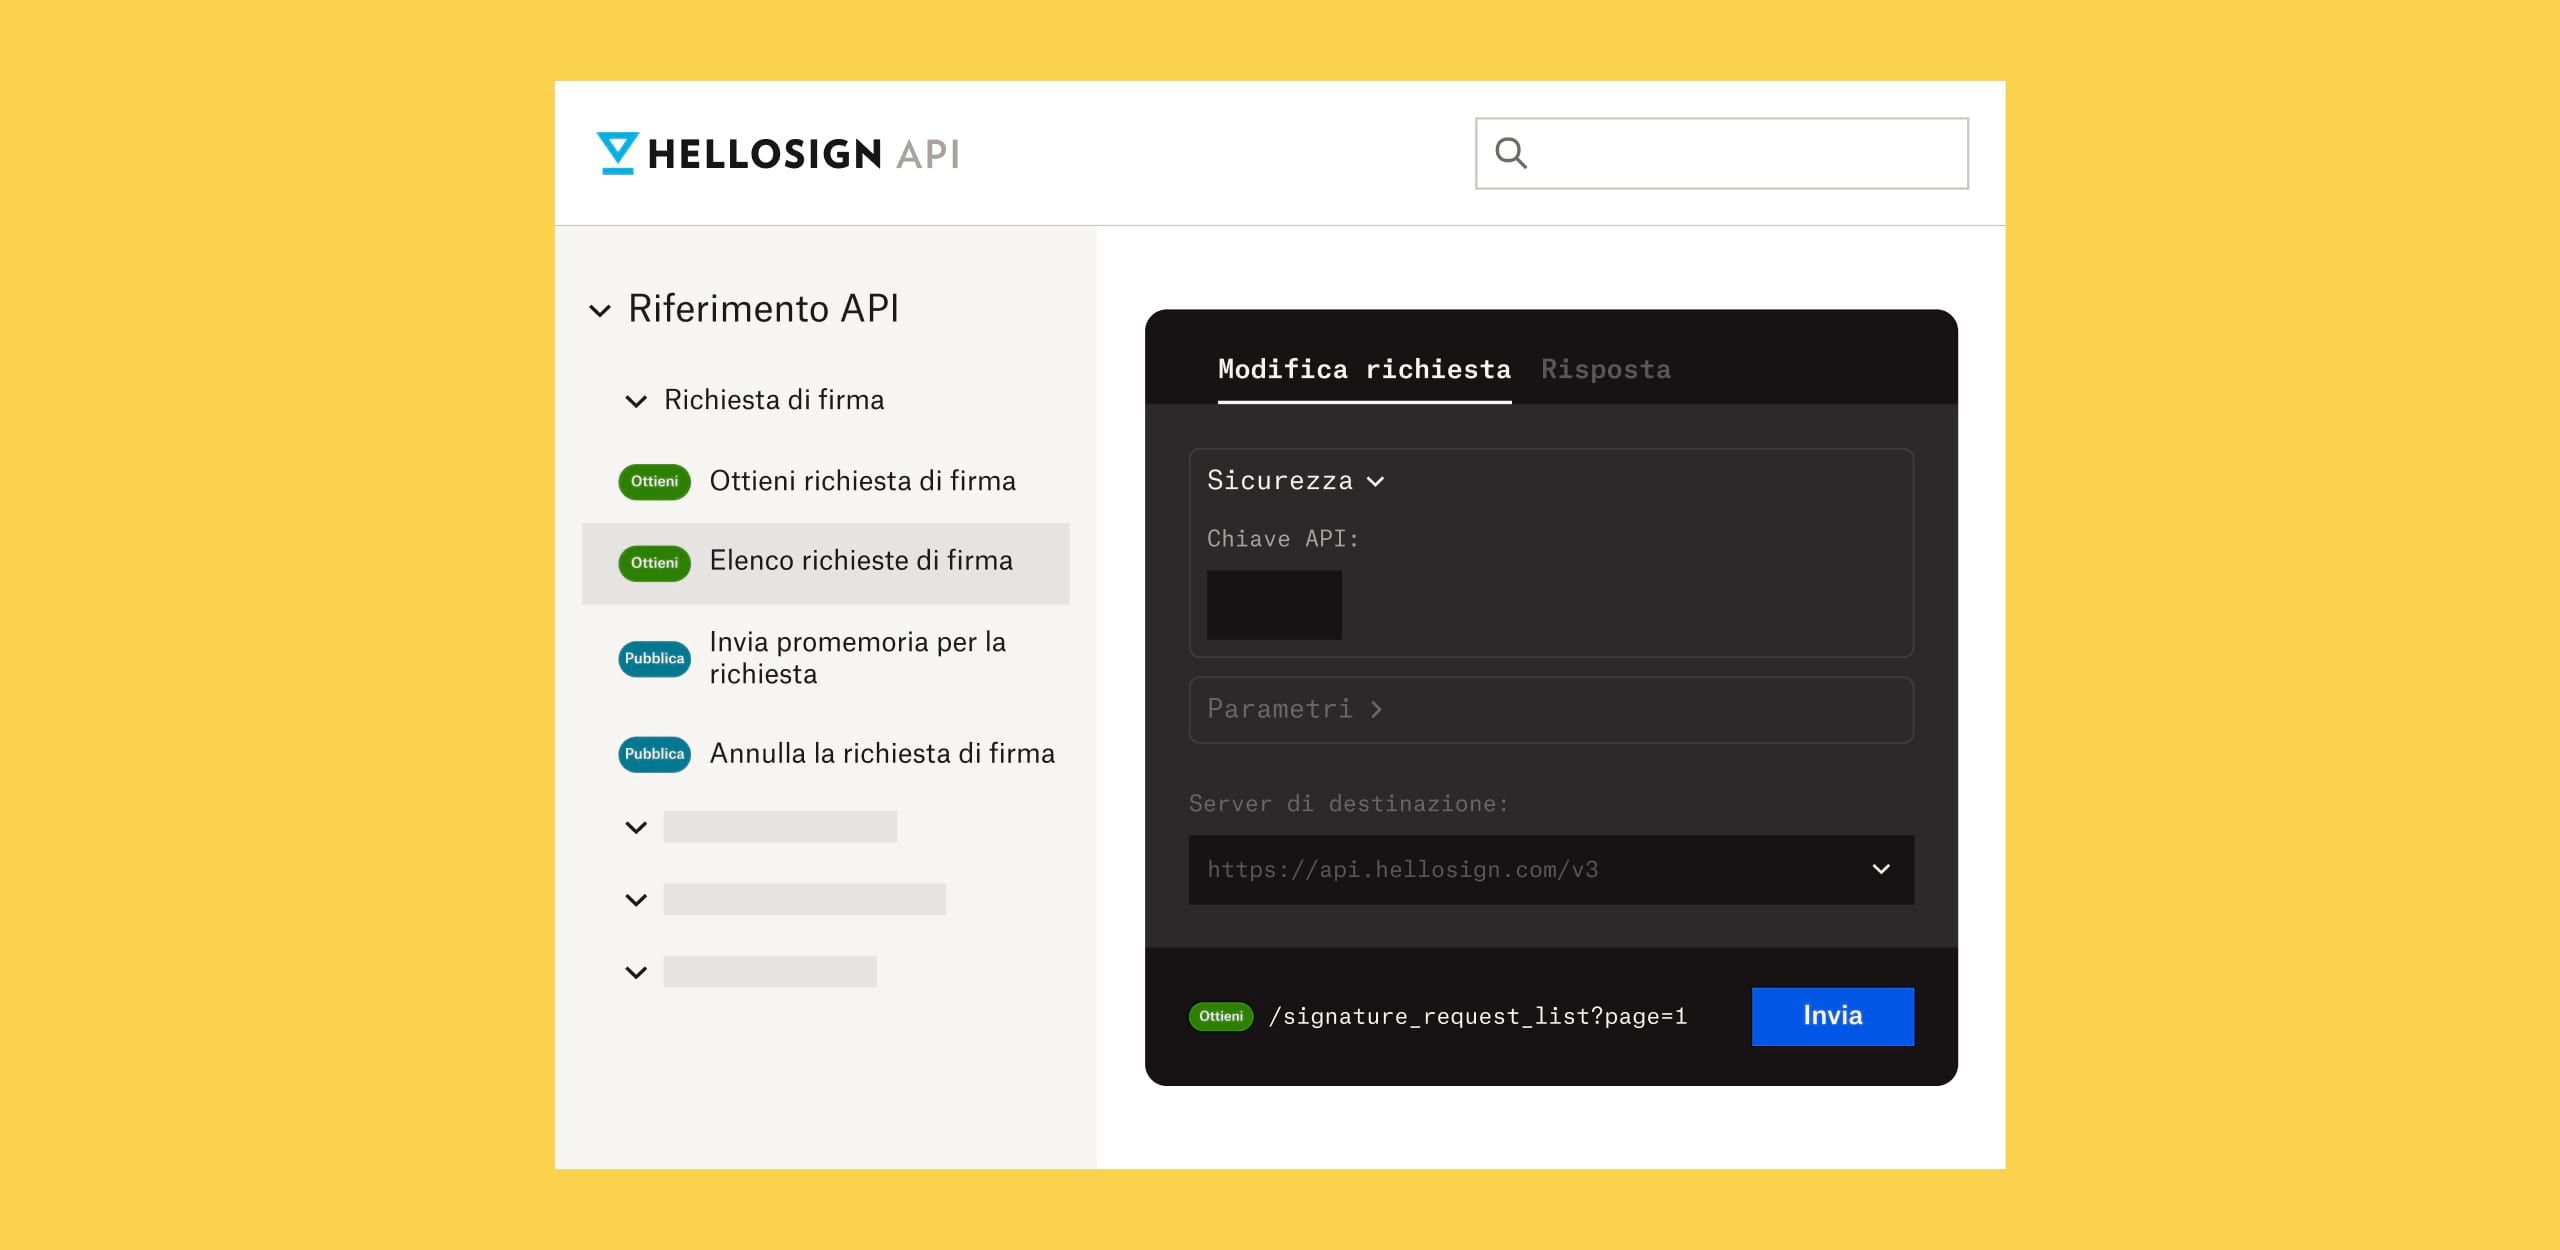 Schermata di riferimento dell'API HelloSign con testo bianco tenue su sfondo nero